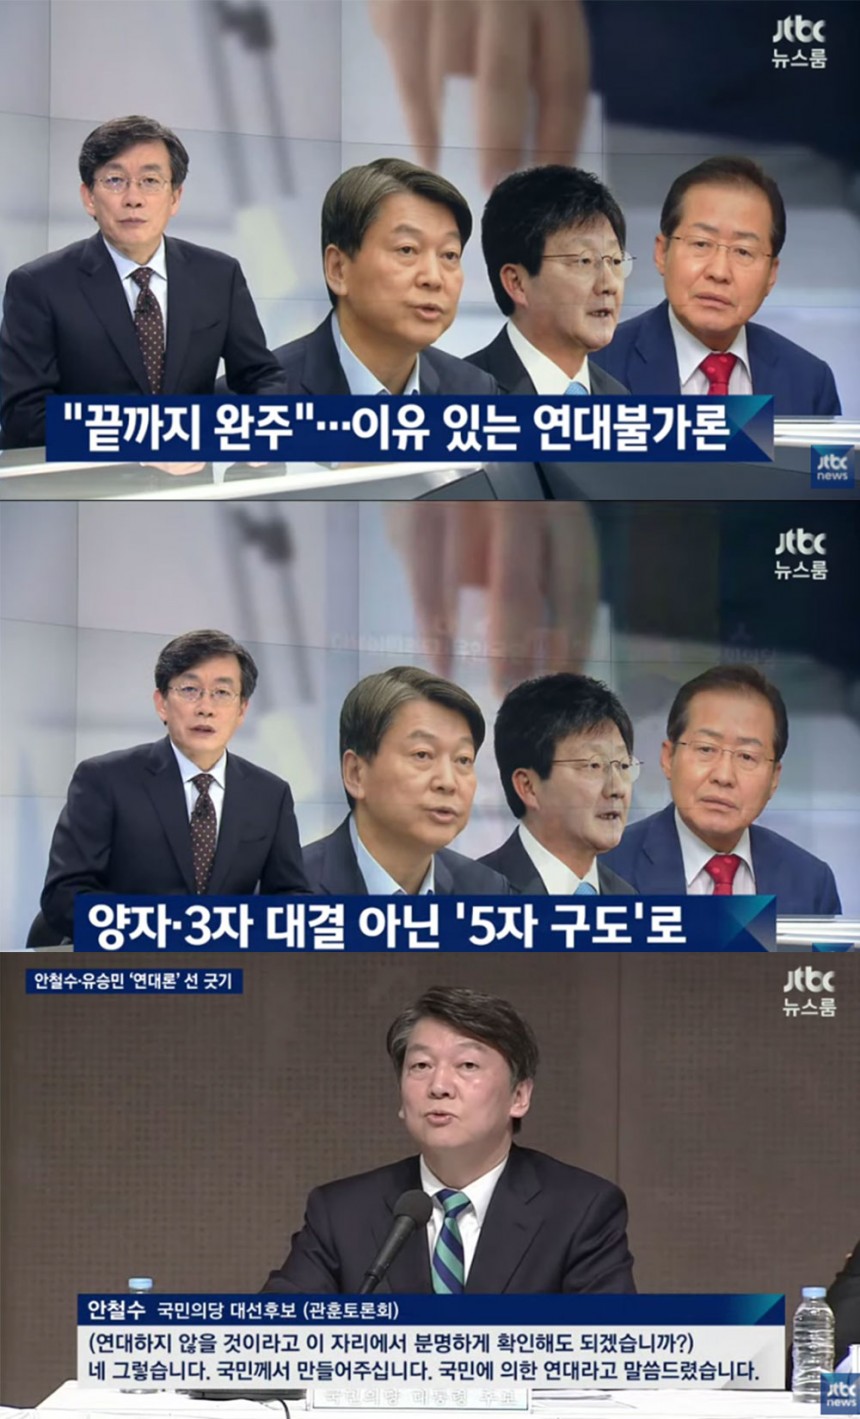 뉴스룸’ 손석희 / JTBC 뉴스룸’ 방송 캡처